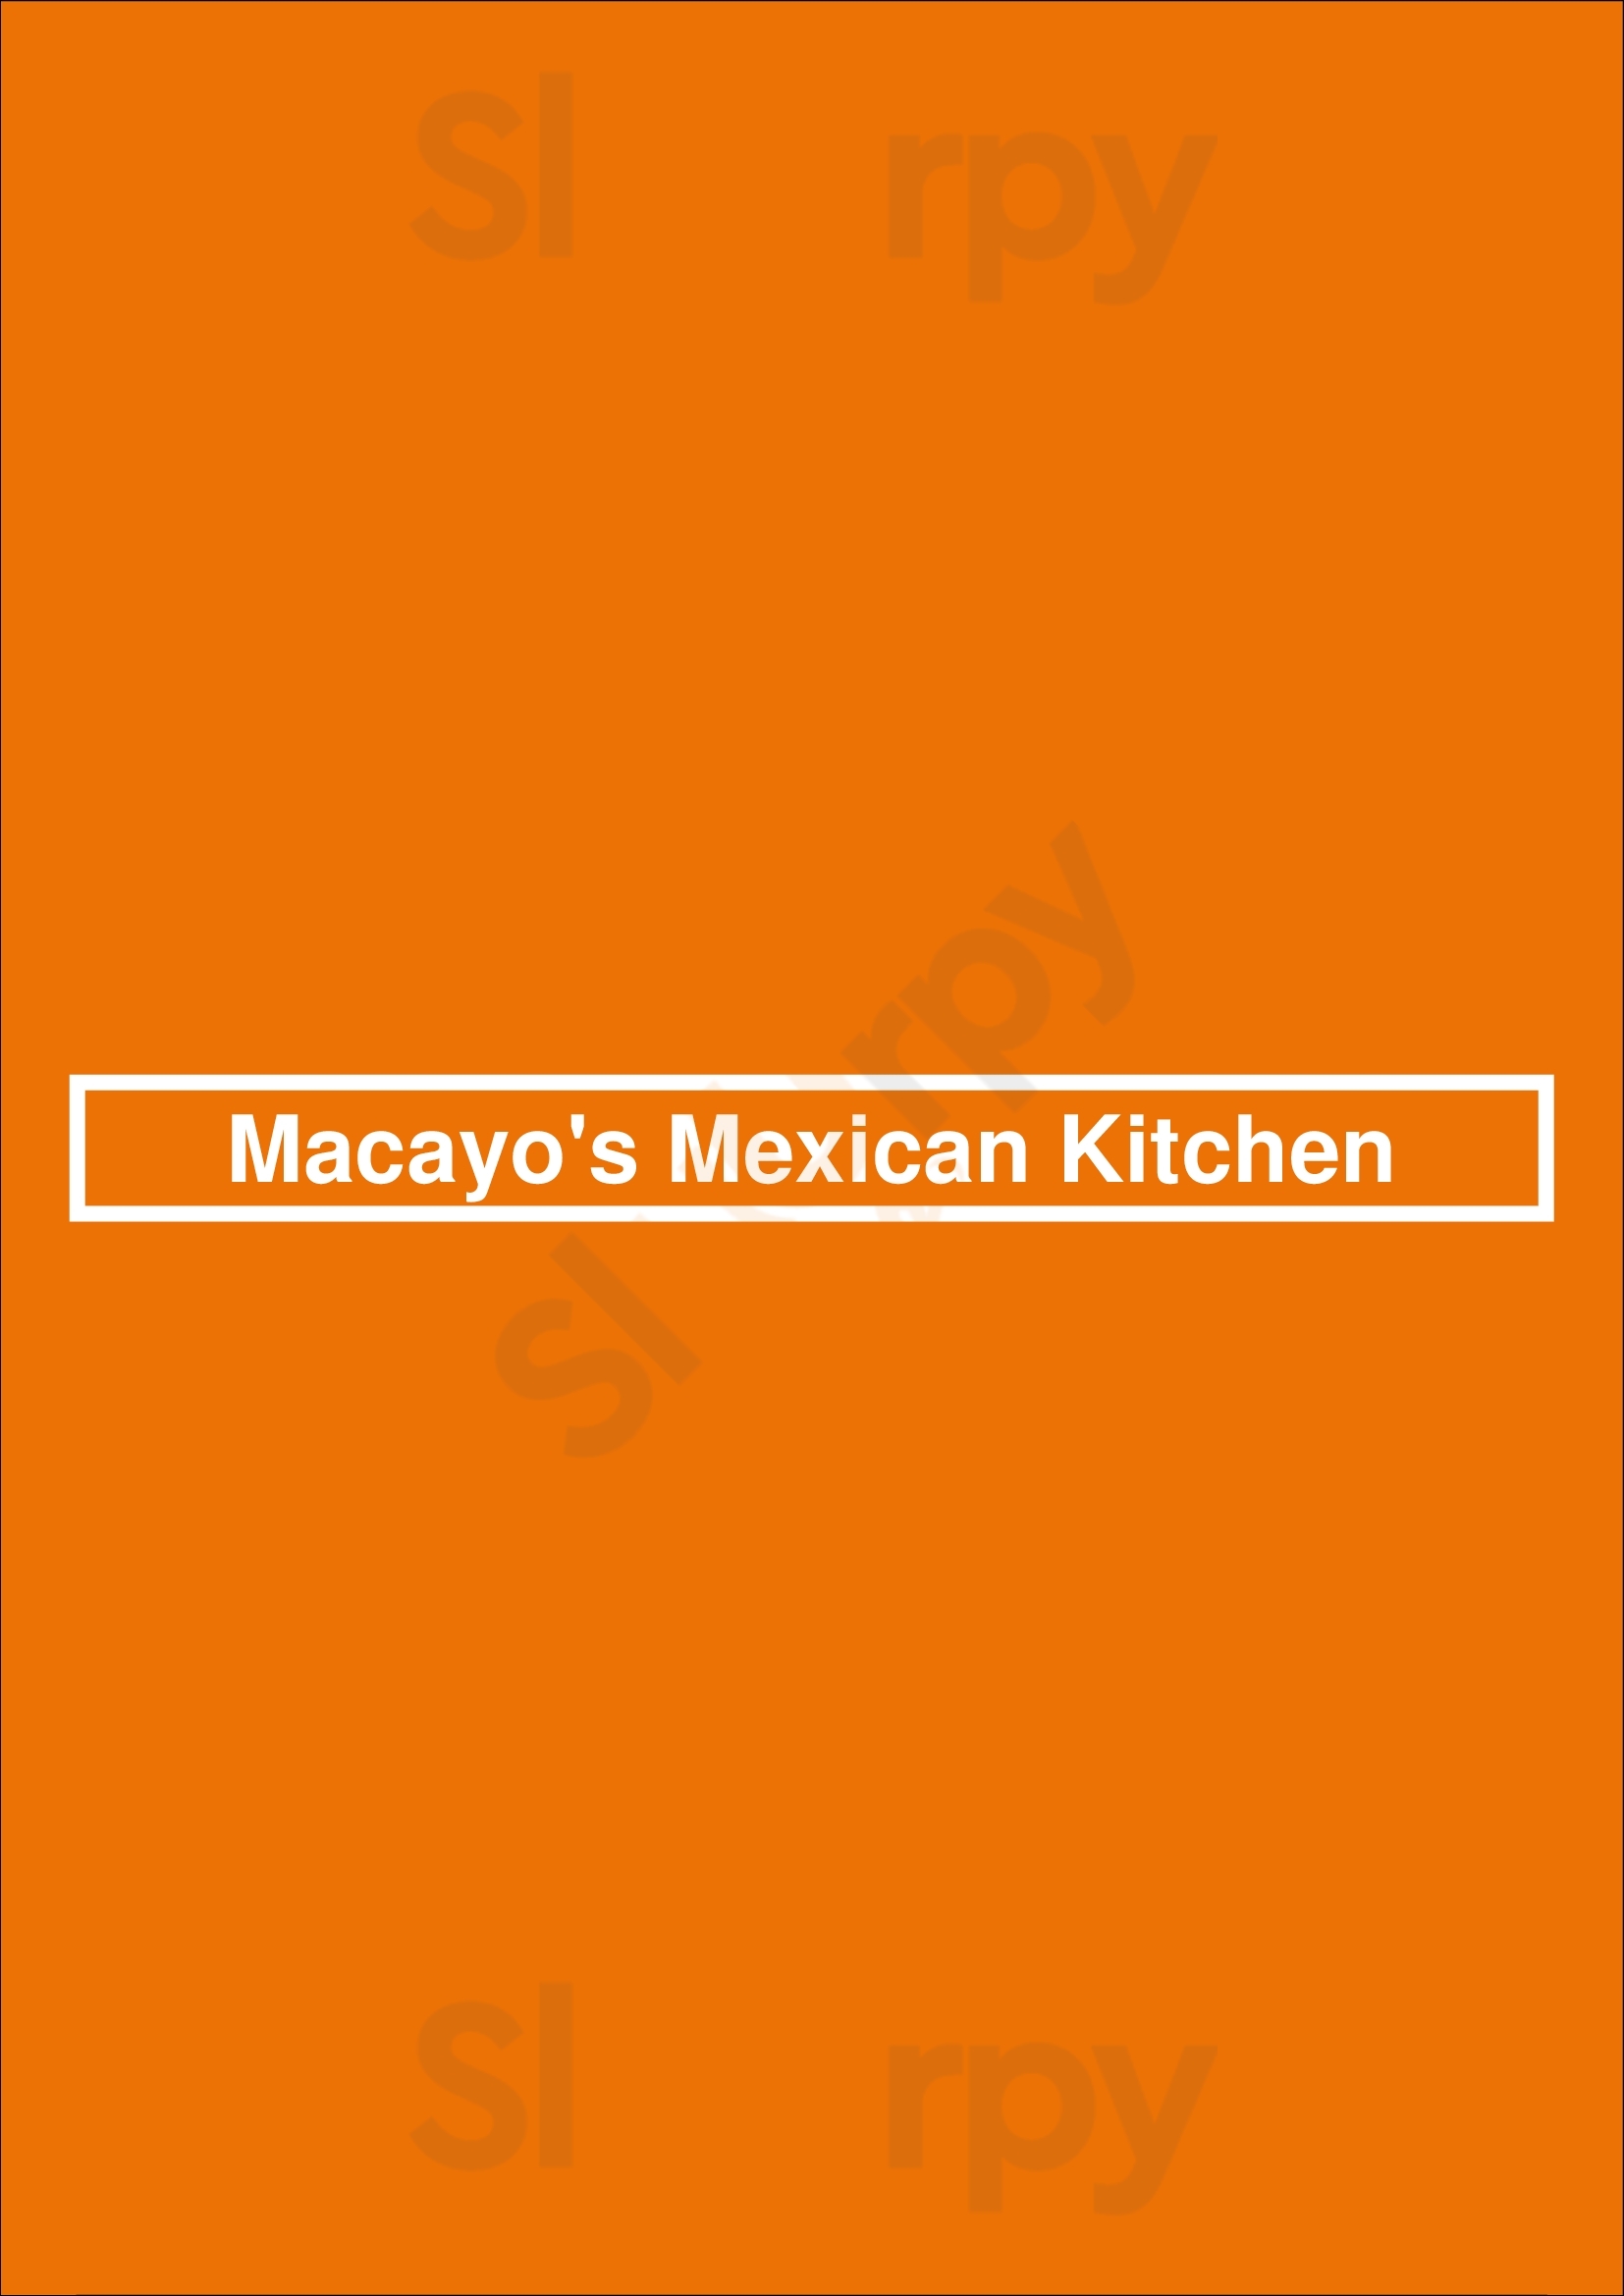 Macayo's Mexican Food Mesa Menu - 1